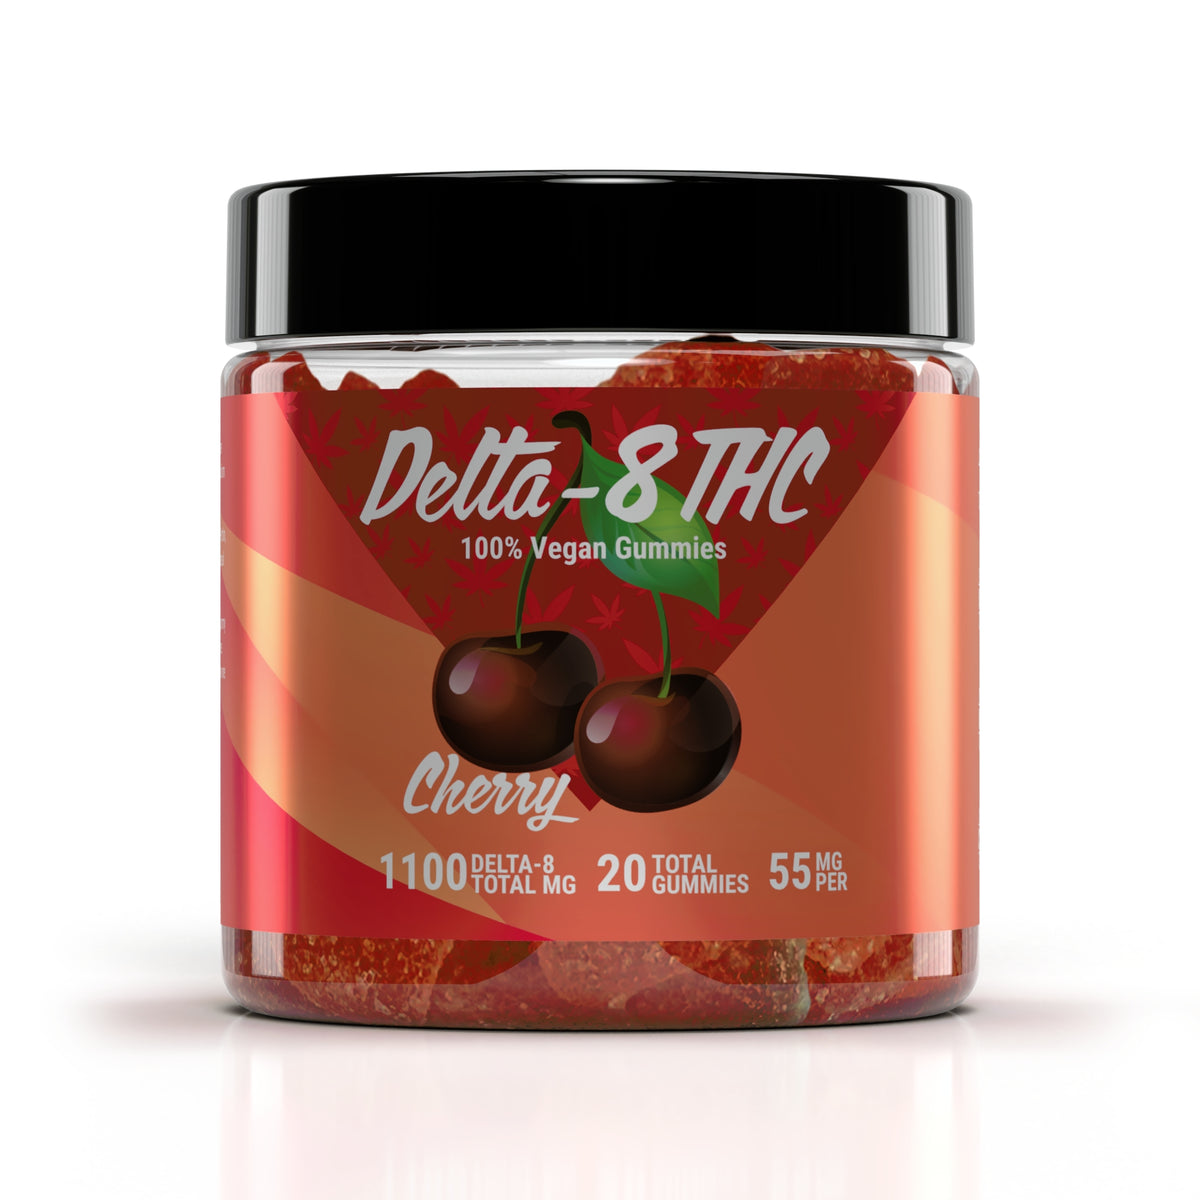 Delta-8 Vegan 55mg Cherry Flavor